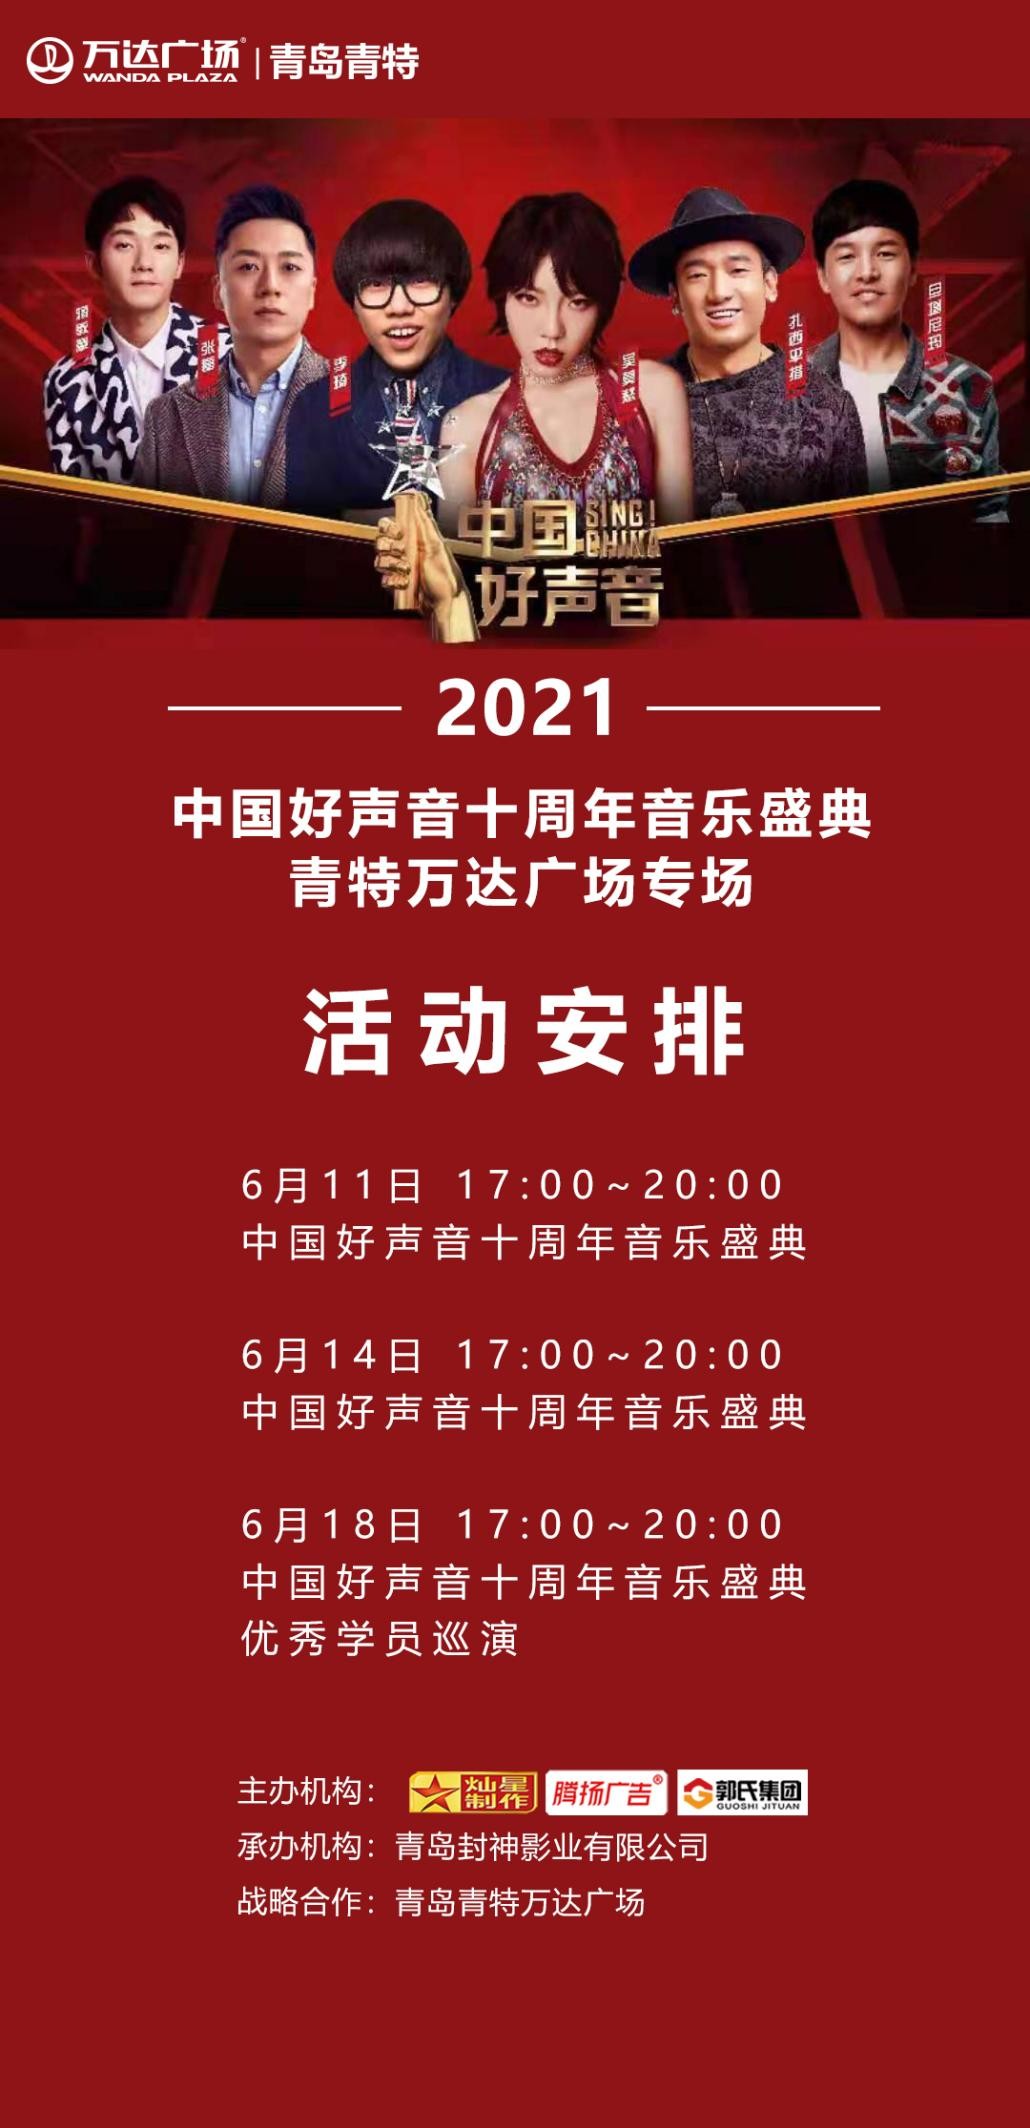 2021中国好声音十周年音乐盛典青特万达专场火热来袭!